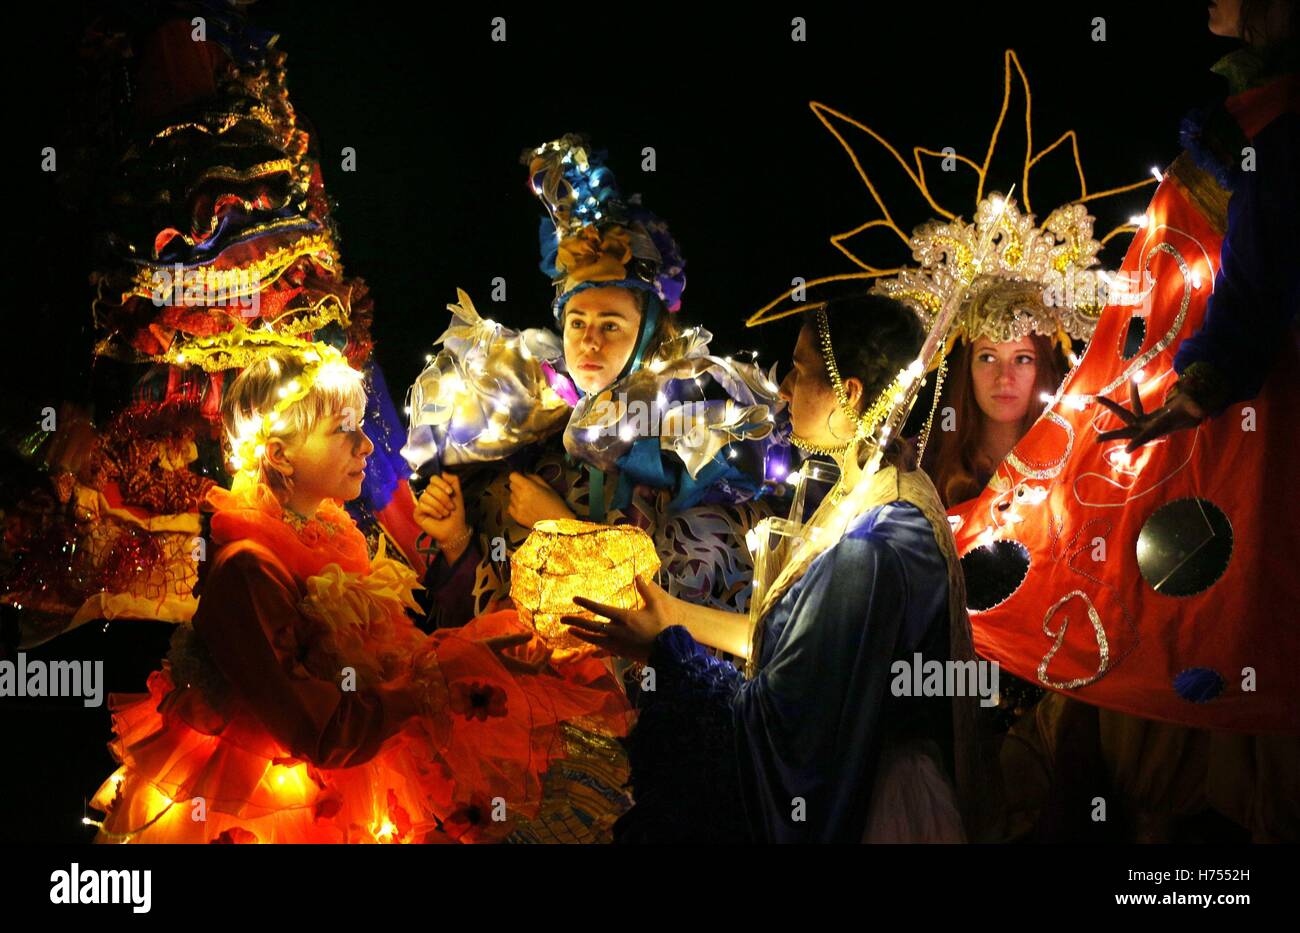 Los estudiantes de la universidad de Edinburgo vestir trajes adornados con luces, espejos y campanas para celebrar el festival hindú de Diwali en Edimburgo. Foto de stock